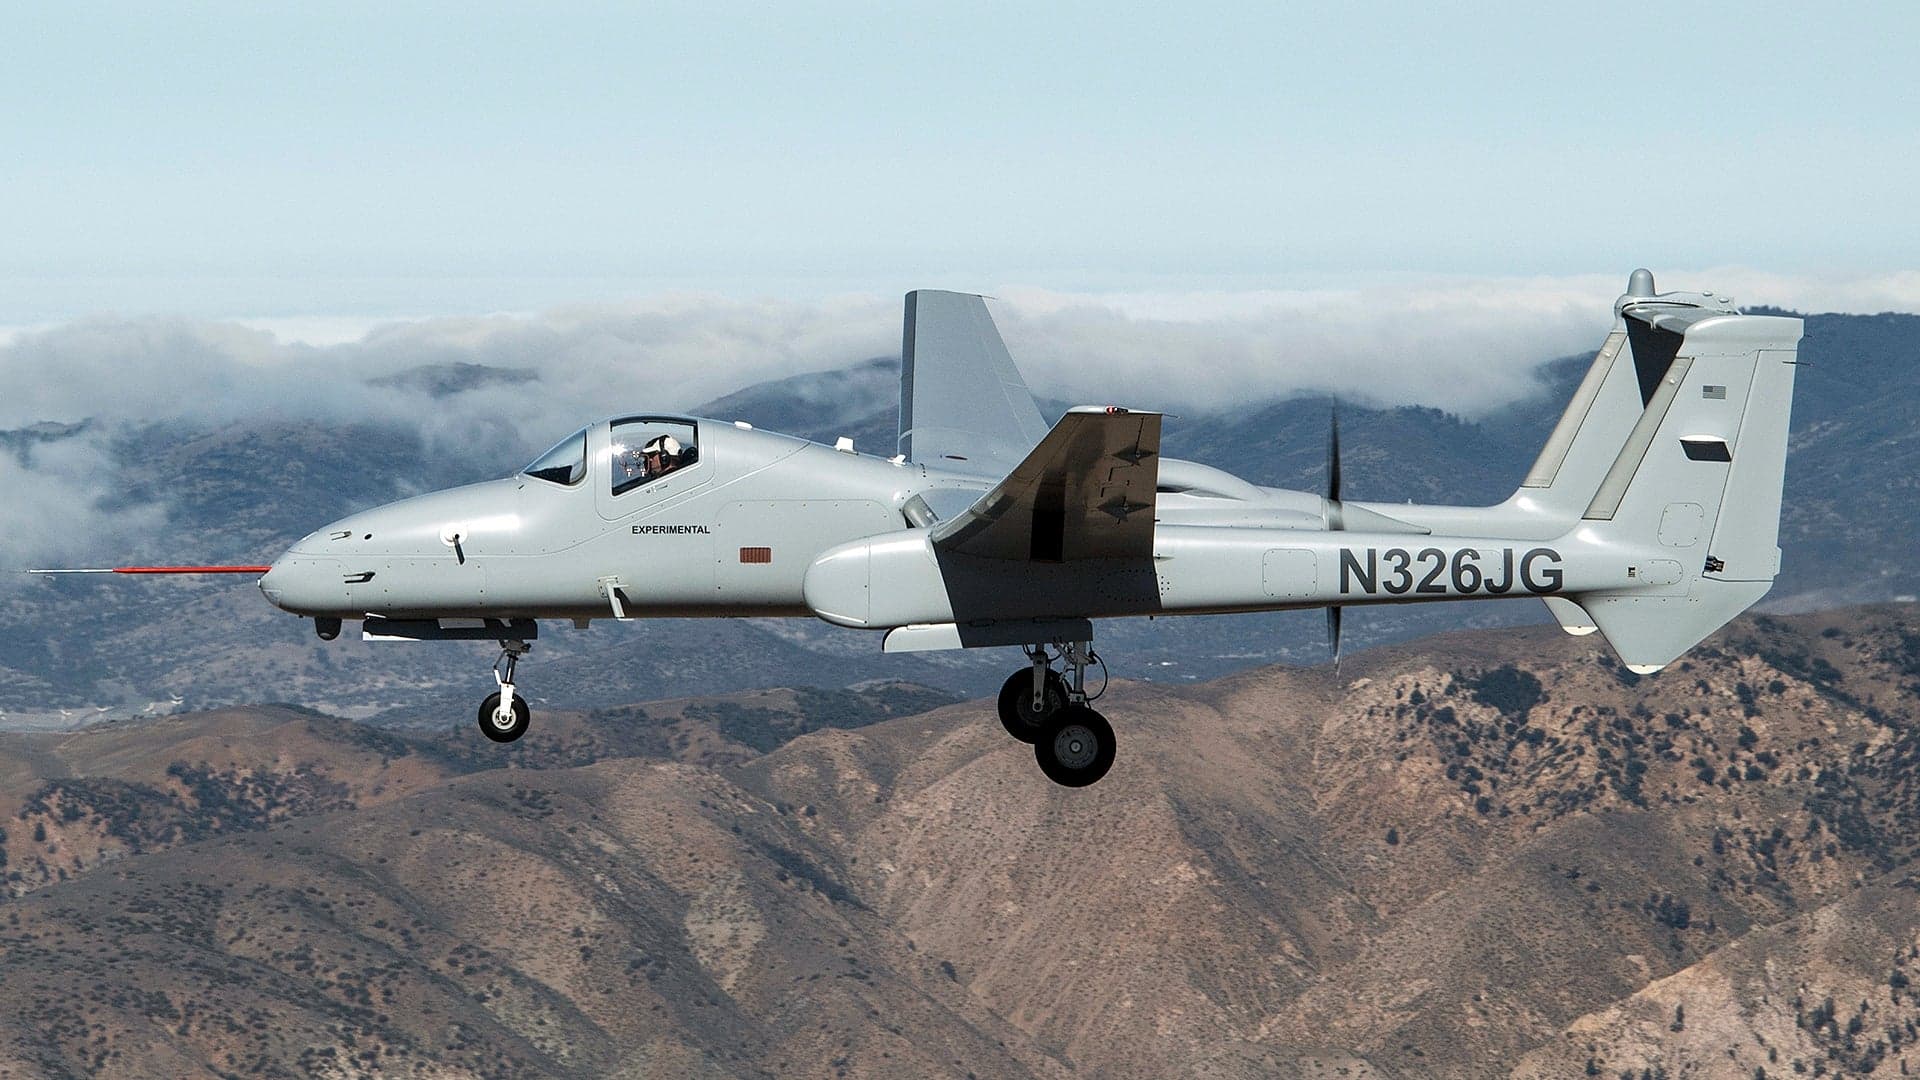 Northrop Grumman Plans To Upend Aerial Surveillance Market With Their Optionally Manned Firebird